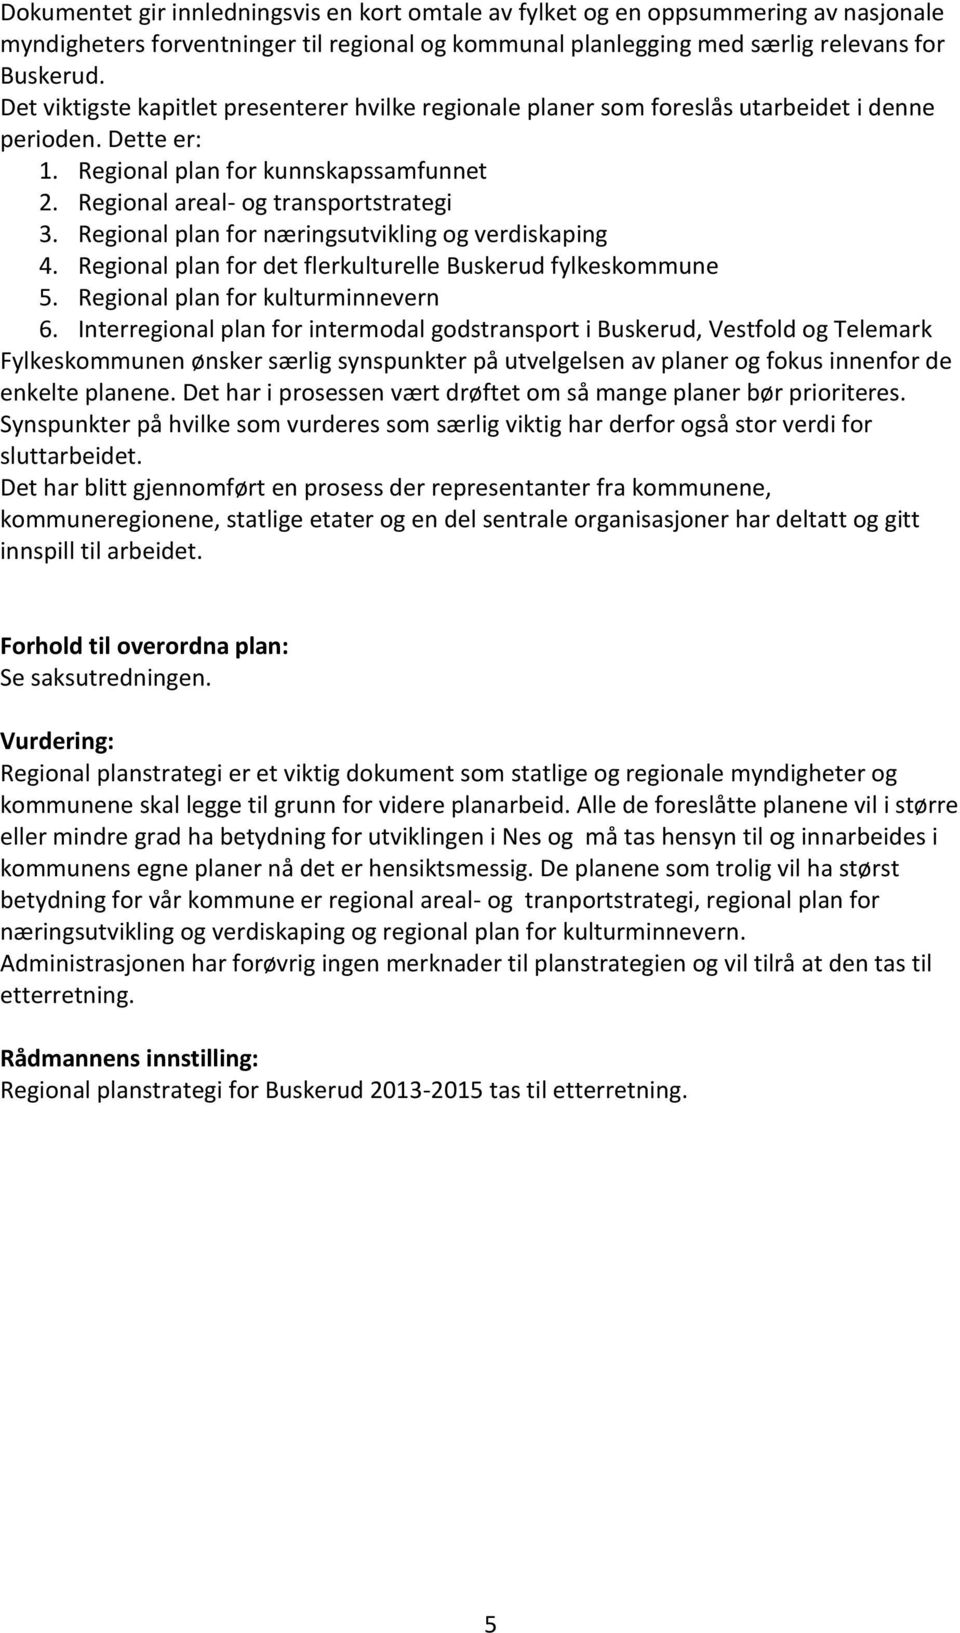 Regional plan for næringsutvikling og verdiskaping 4. Regional plan for det flerkulturelle Buskerud fylkeskommune 5. Regional plan for kulturminnevern 6.